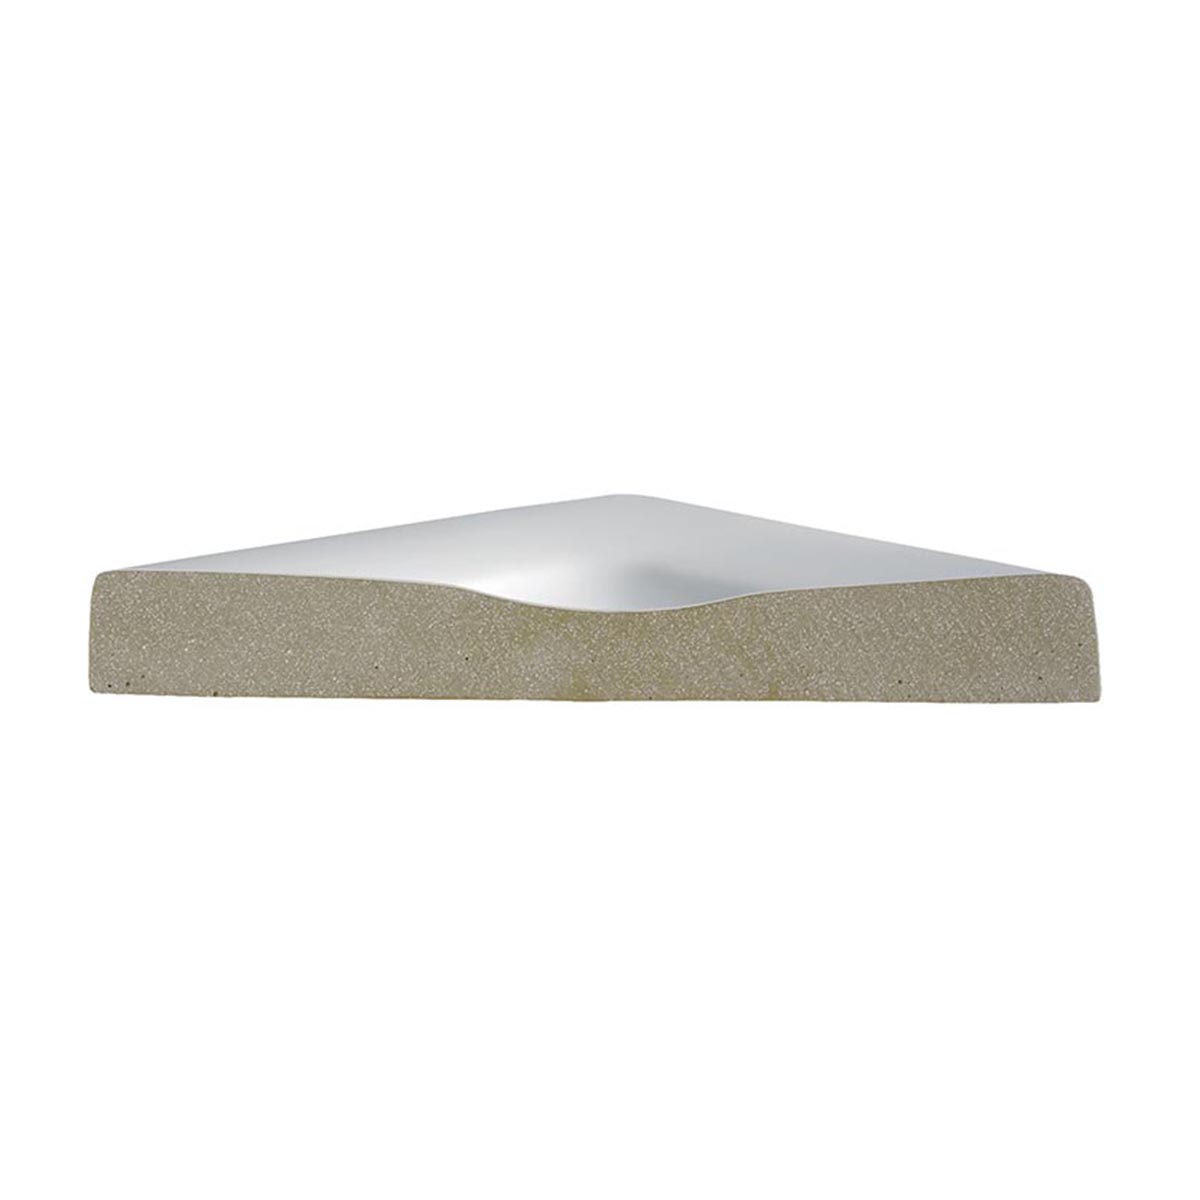 HSK Marmor-Polymer Quadrat Duschwanne plan-Weiß-120 x 120 cm-ohne AntiSlip-Beschichtung-mit Aquaproof-Dichtset